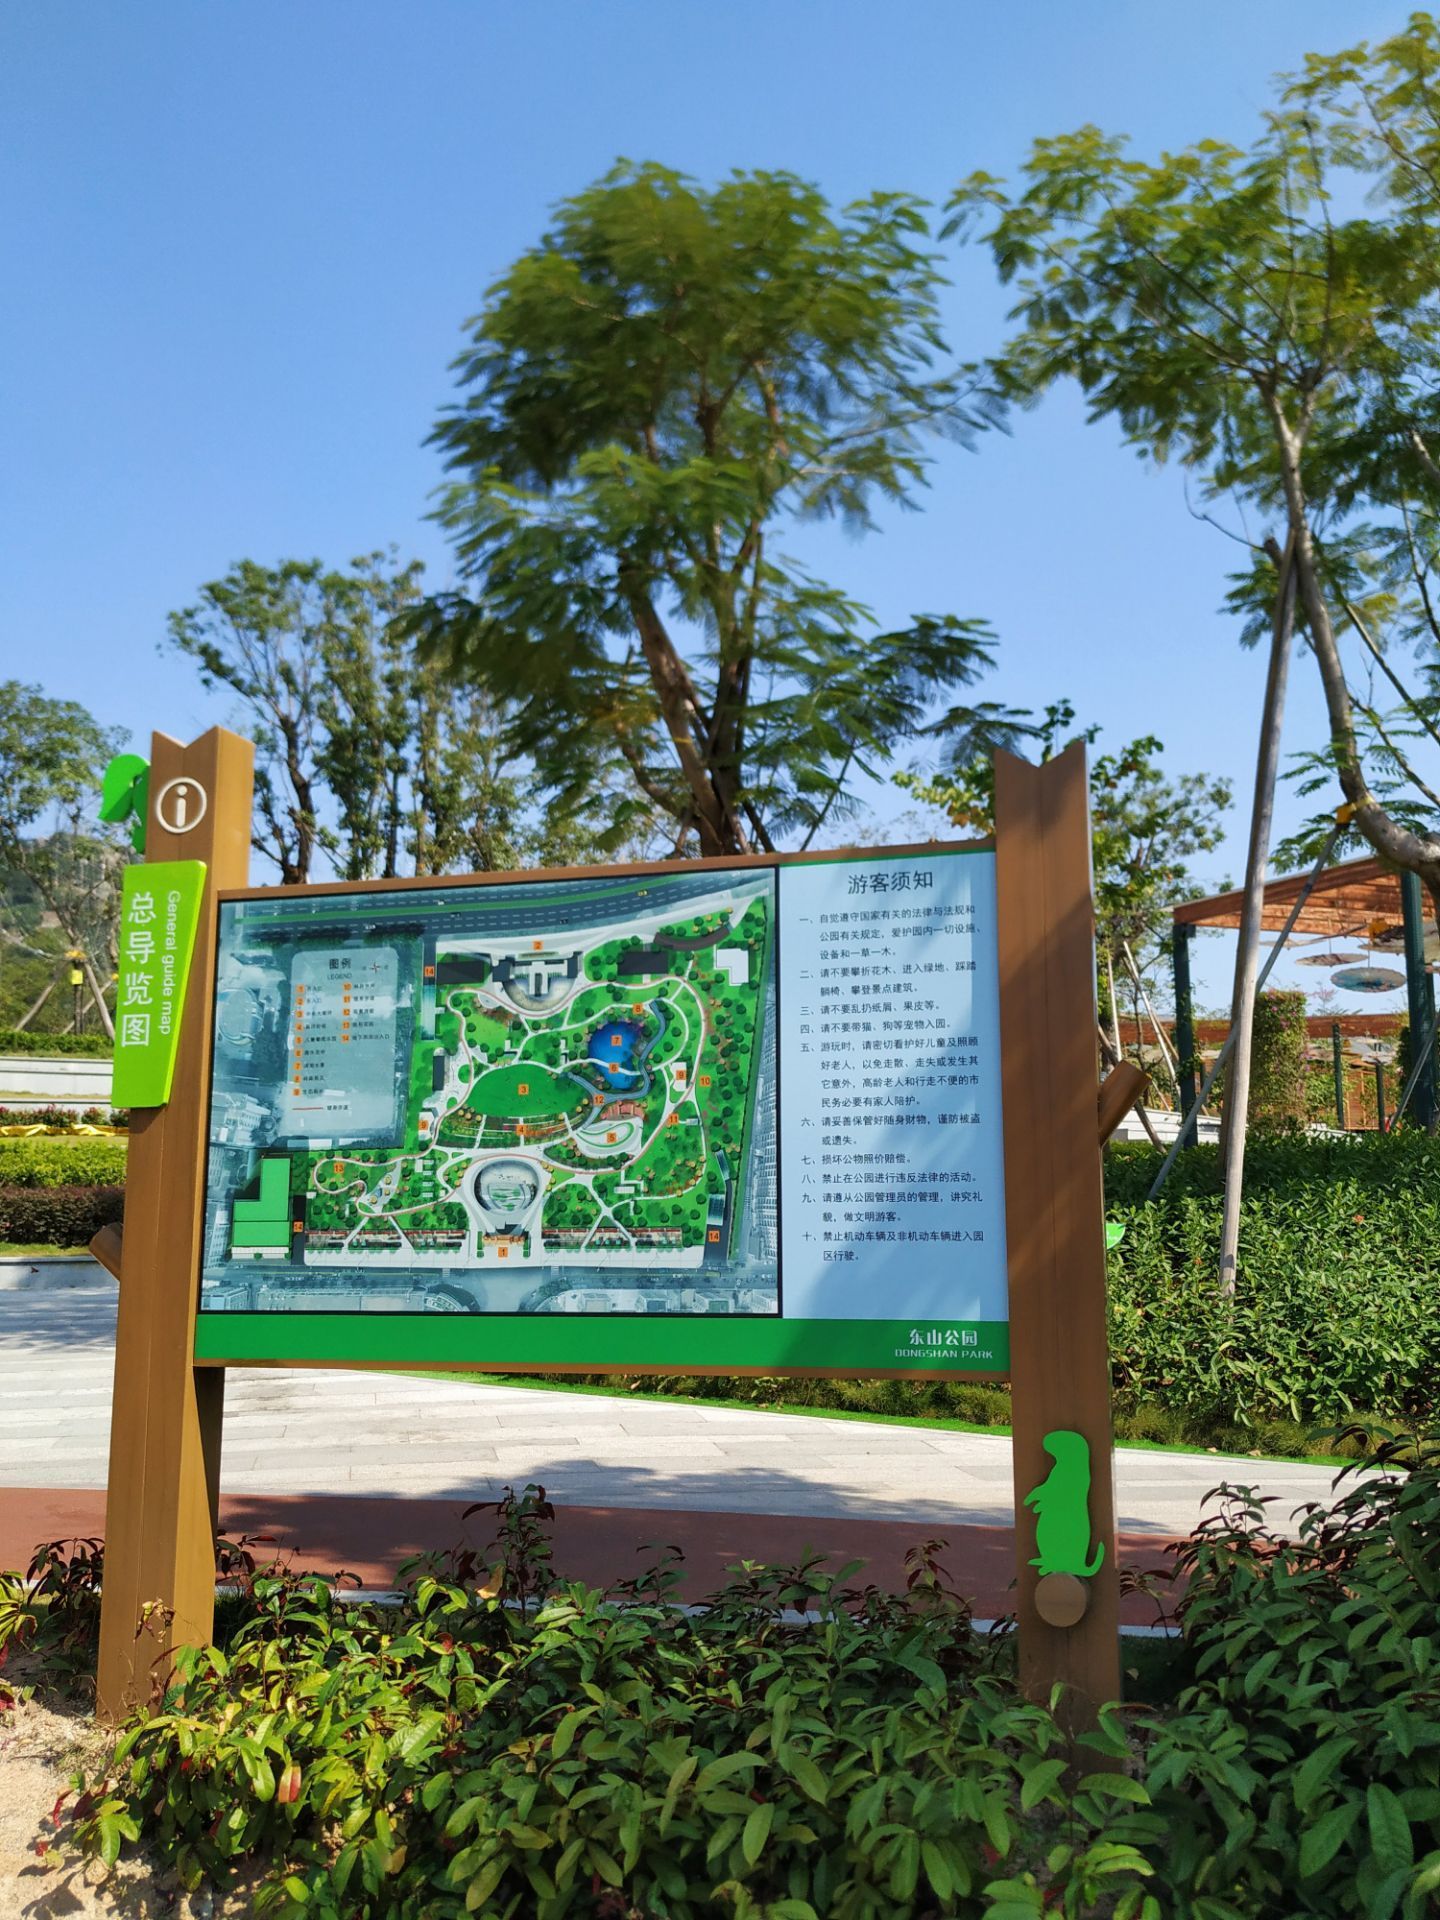 武安东山公园地图图片